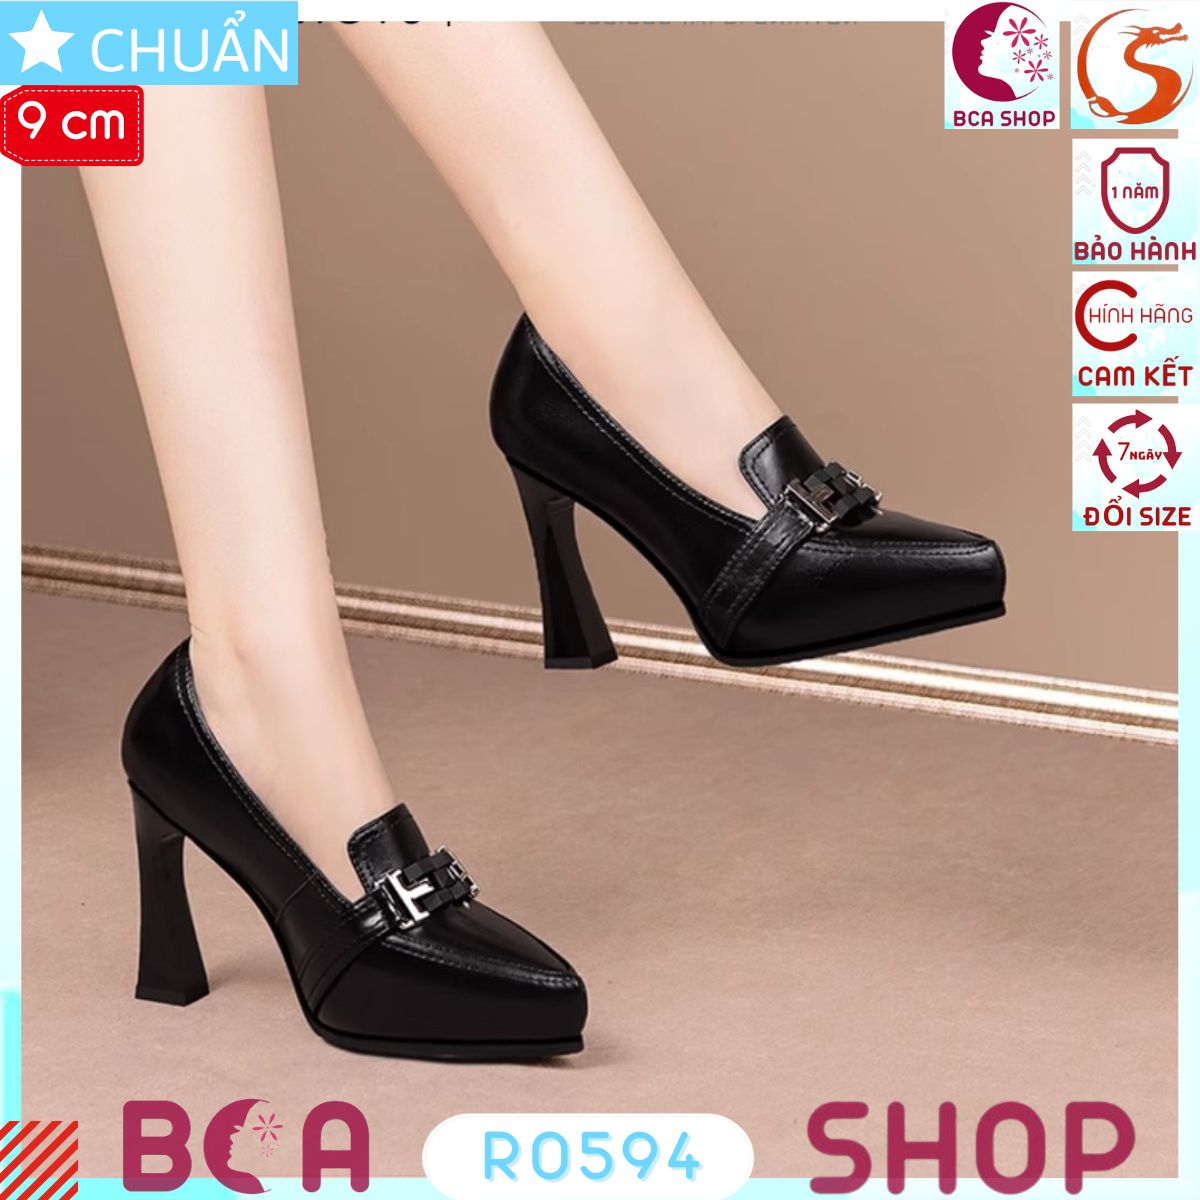 Giày cao gót nữ đế đúp màu đen 9p RO594 ROSATA tại BCASHOP kiểu dáng công sở tôn dáng và thời trang